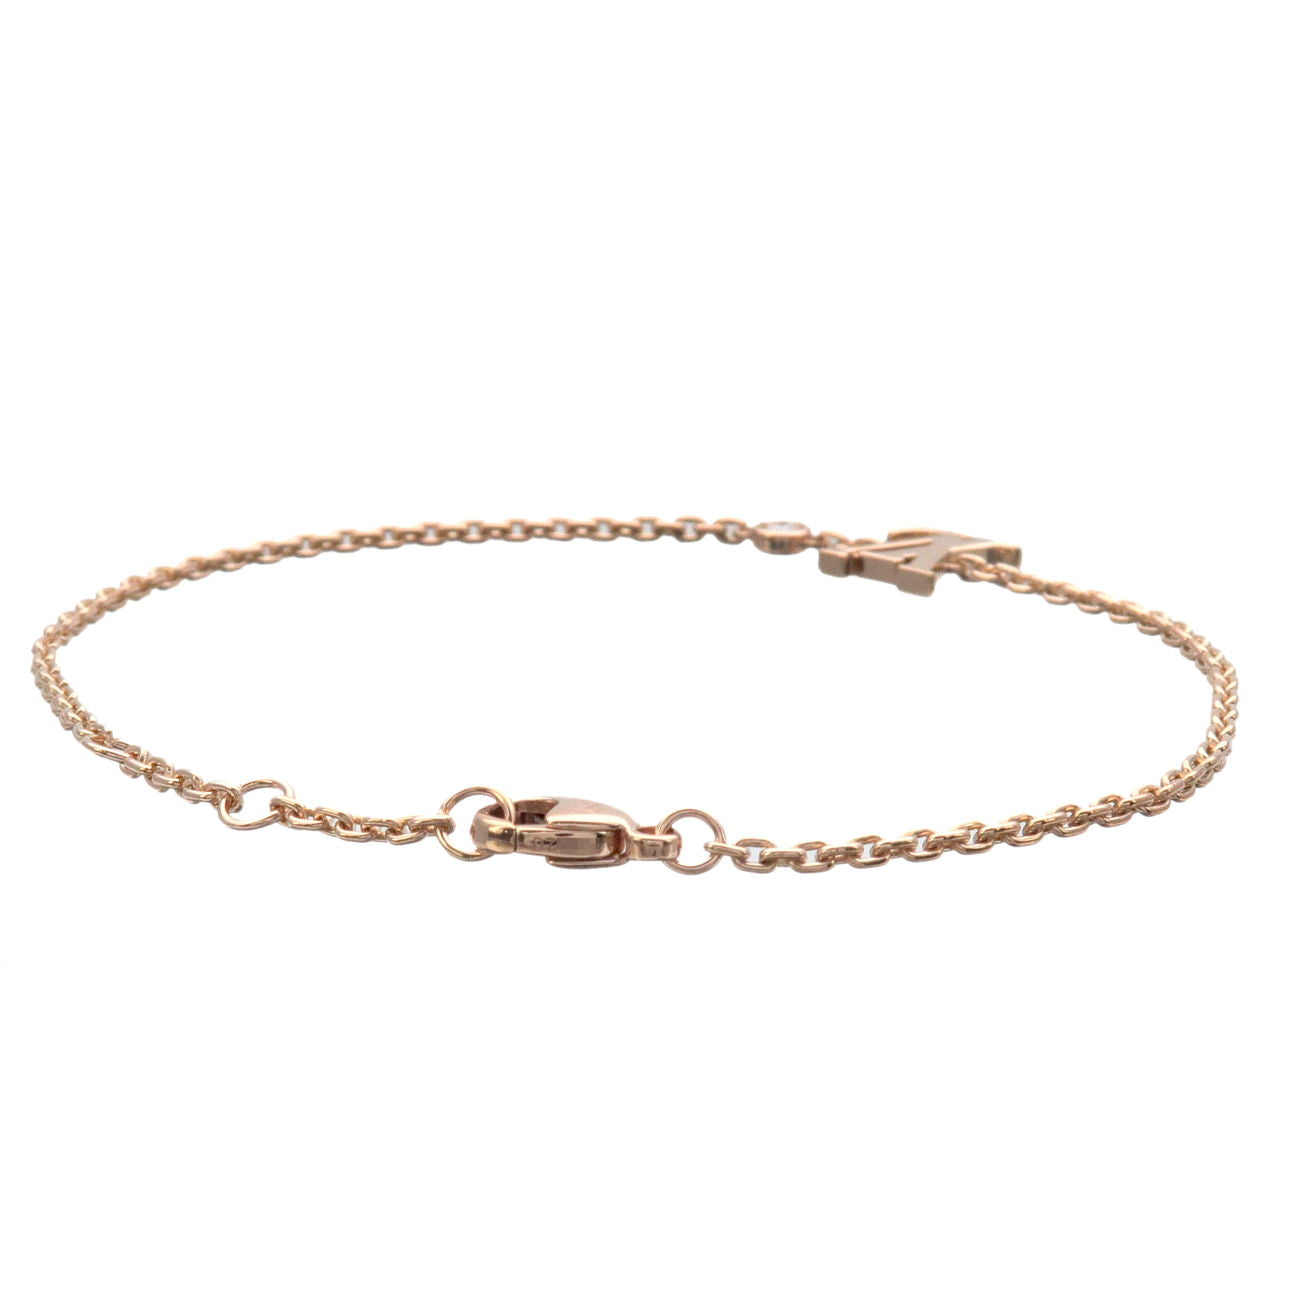 Louis Vuitton Rose Gold Bracelet